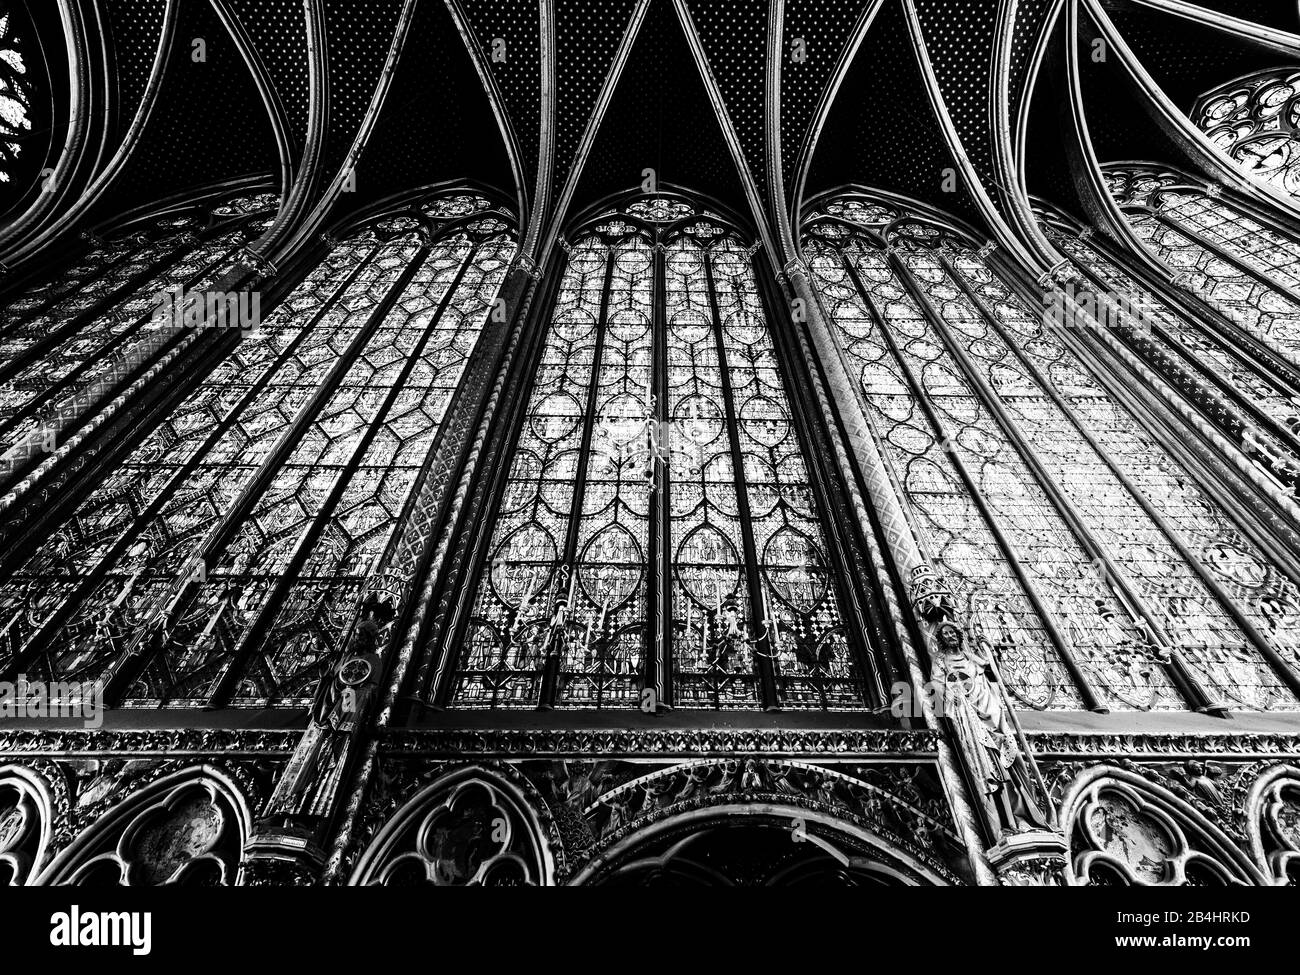 Das Deckengewölbe und die Fensterlanzetten der oberen Kapelle der Sainte Chapelle Paris, Frankreich, Europa Stock Photo